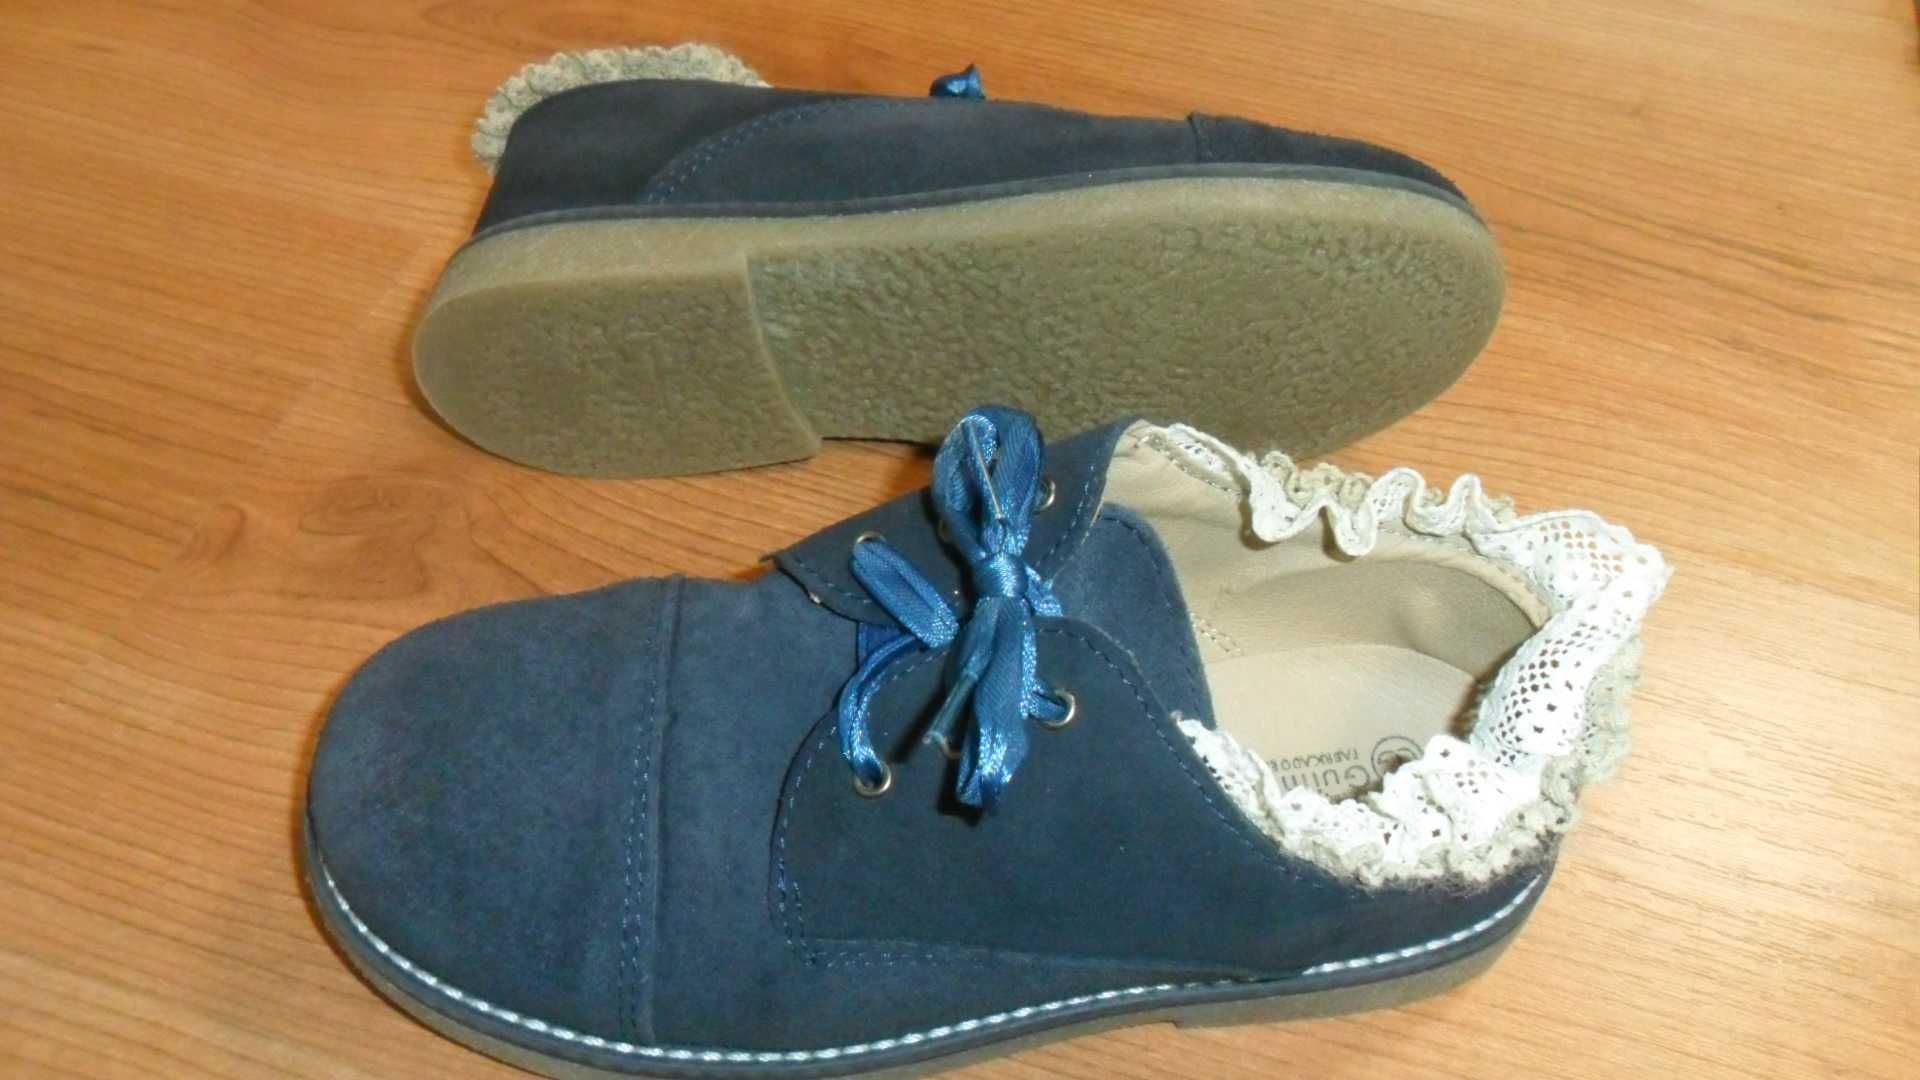 Sapatos menina nº 33 Calçado Guimarães usados em bom estado